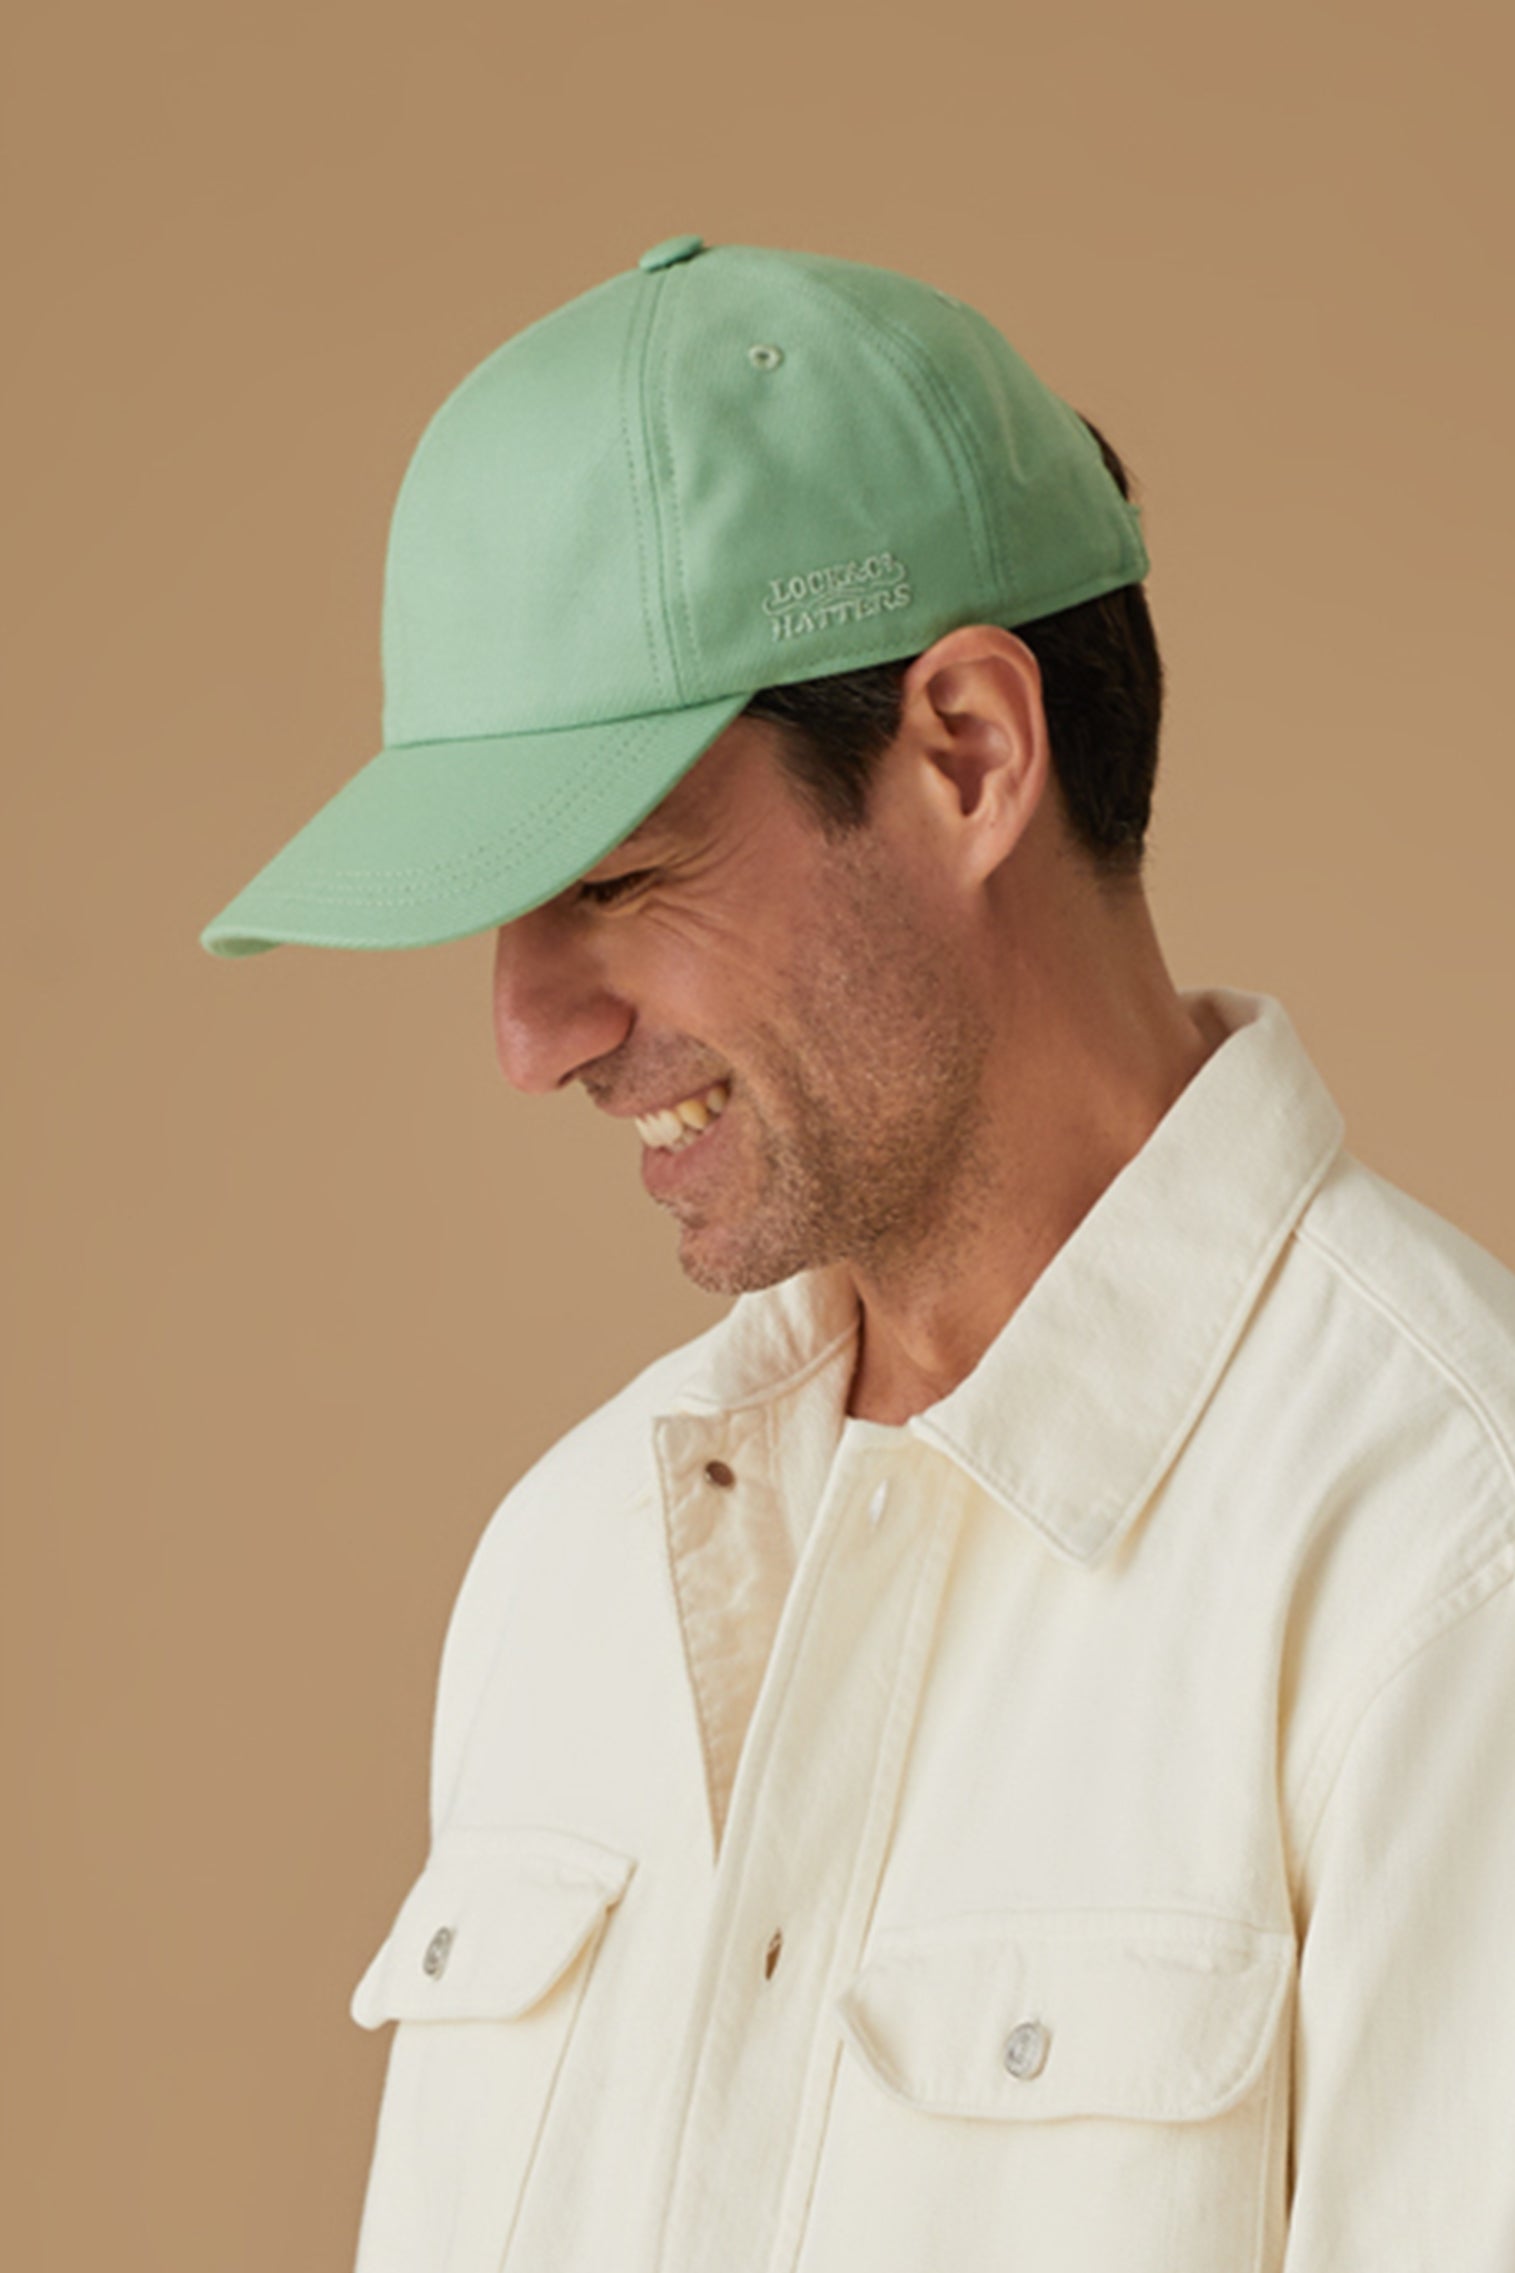 Adjustable Green Baseball Cap - Women’s Hats - Lock & Co. Hatters London UK